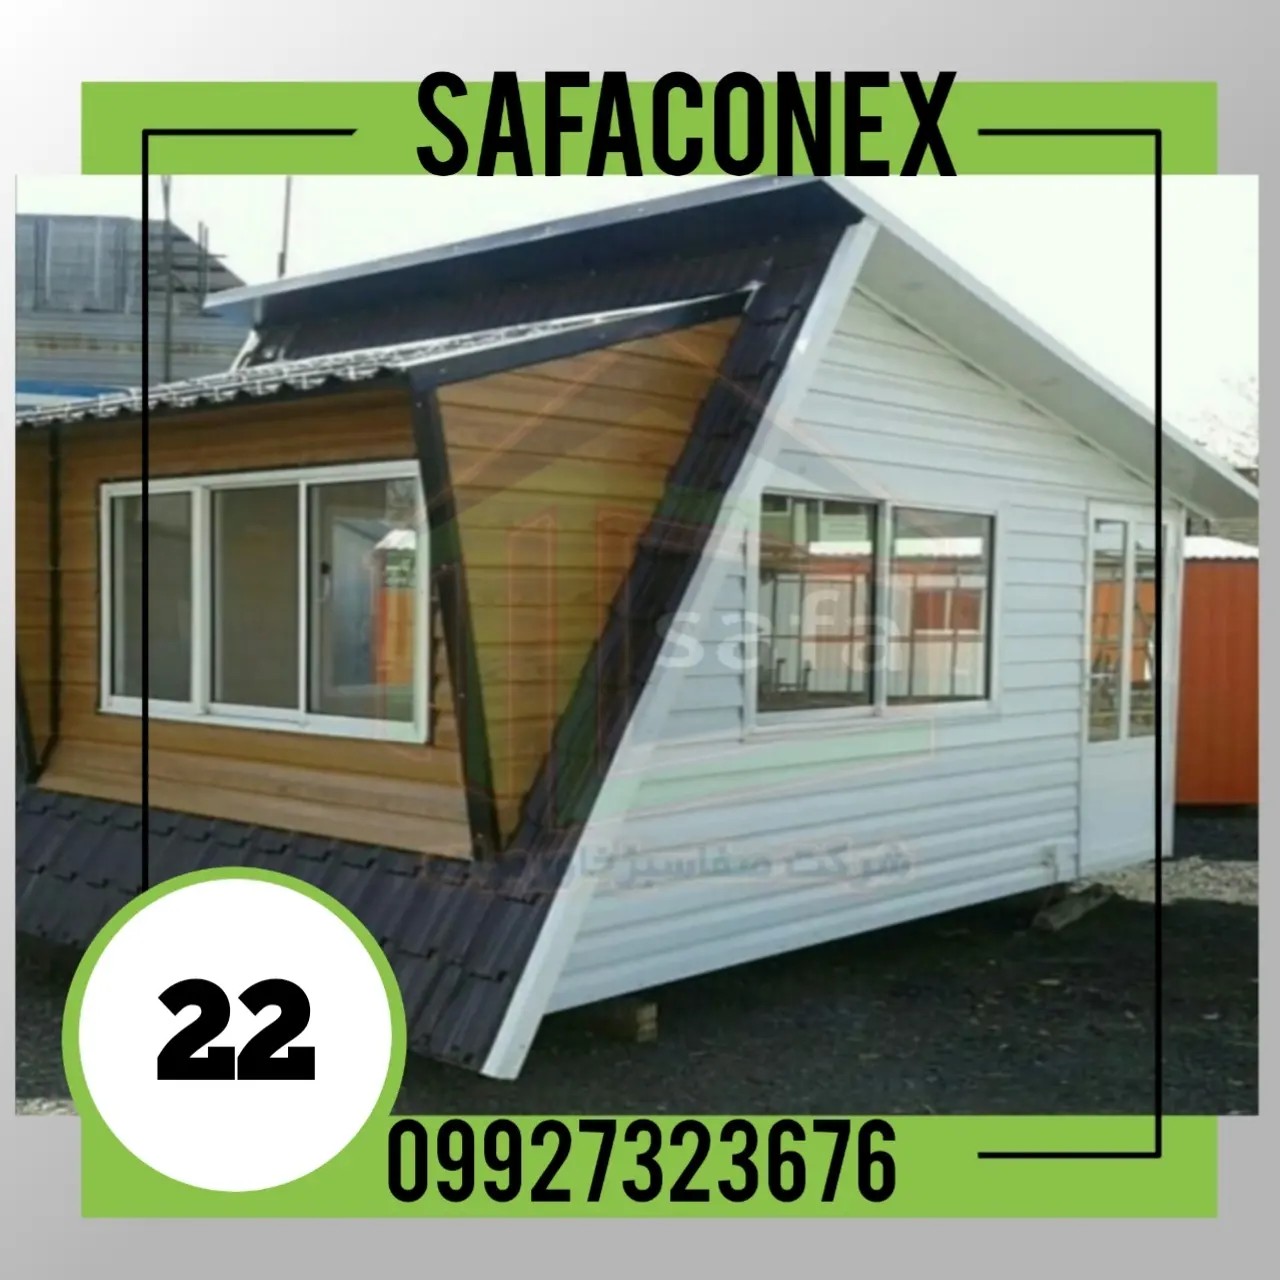 safaconex22